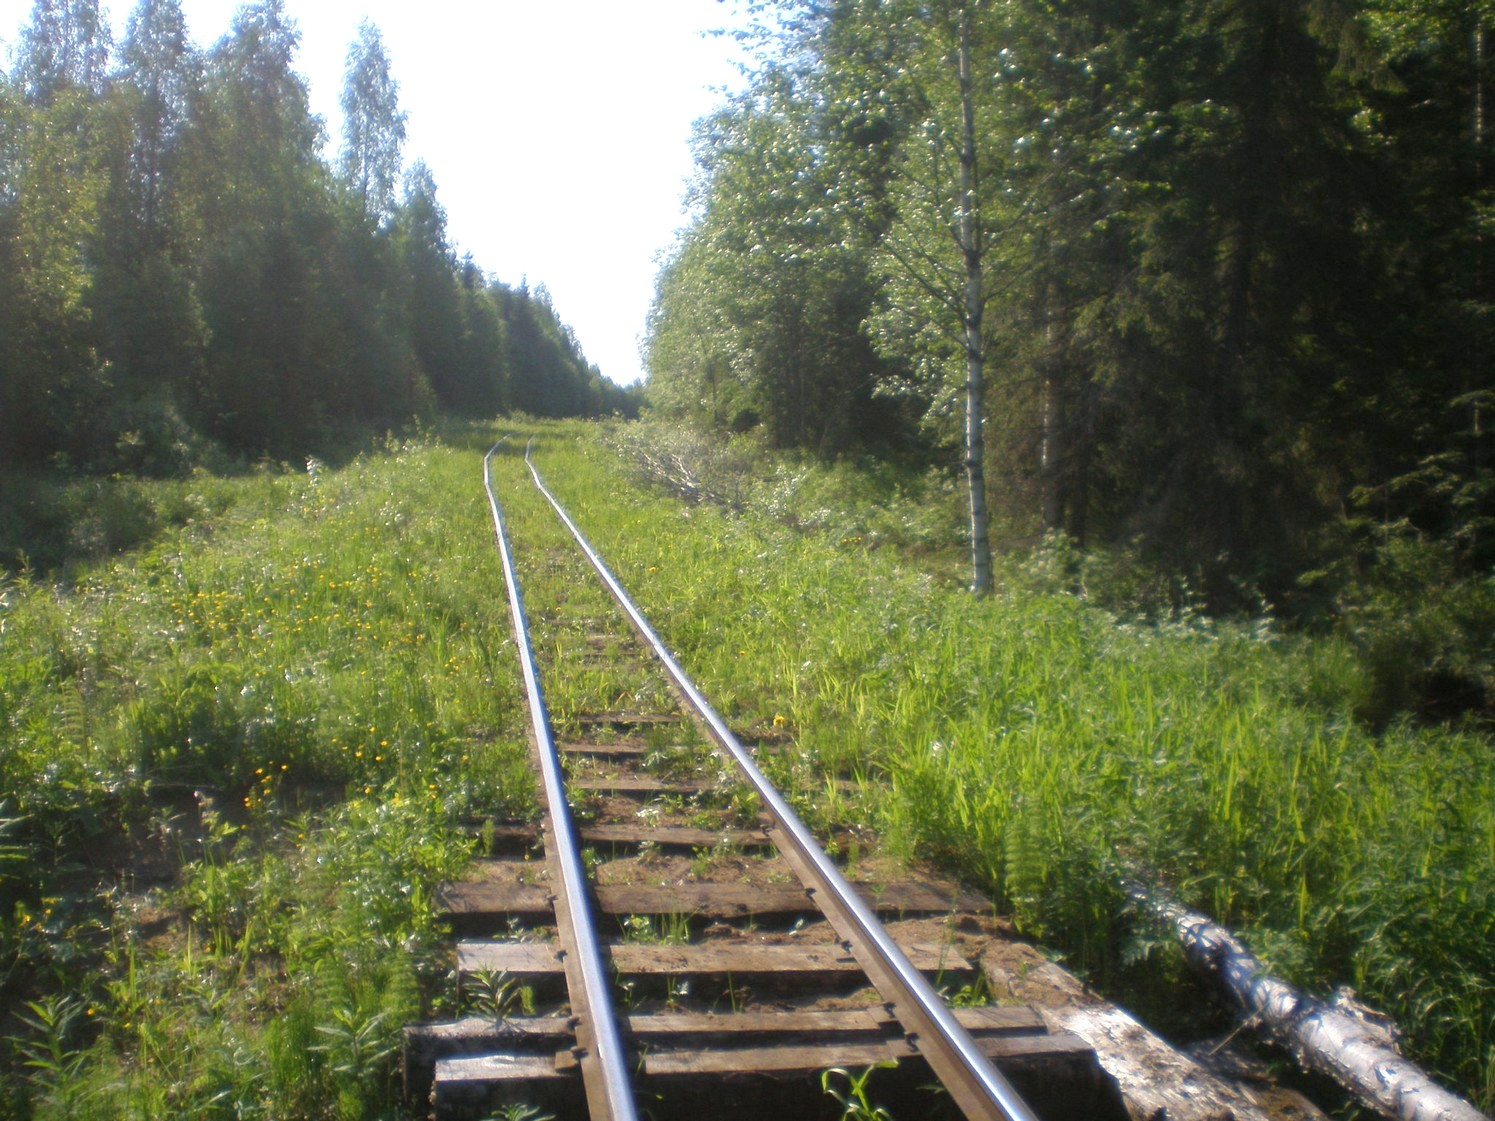 Ивакшанская узкоколейная железная дорога — фотографии, сделанные в 2009 году (часть 11)